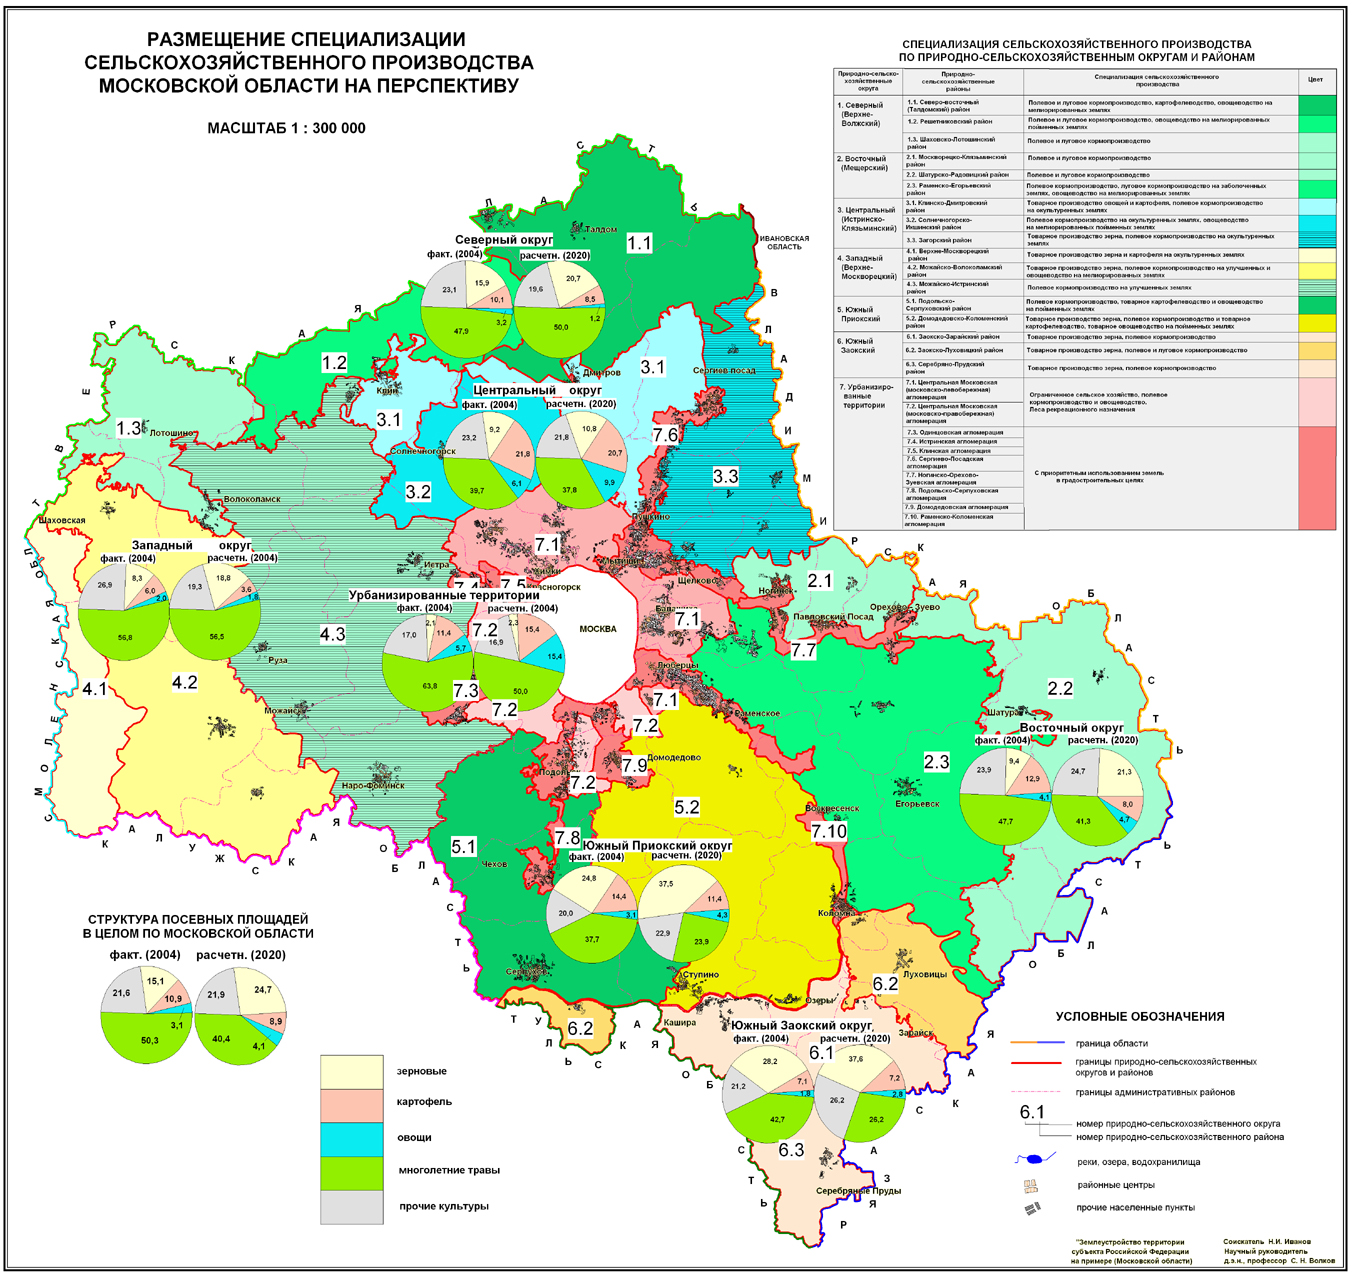 Эко карта москвы и подмосковья